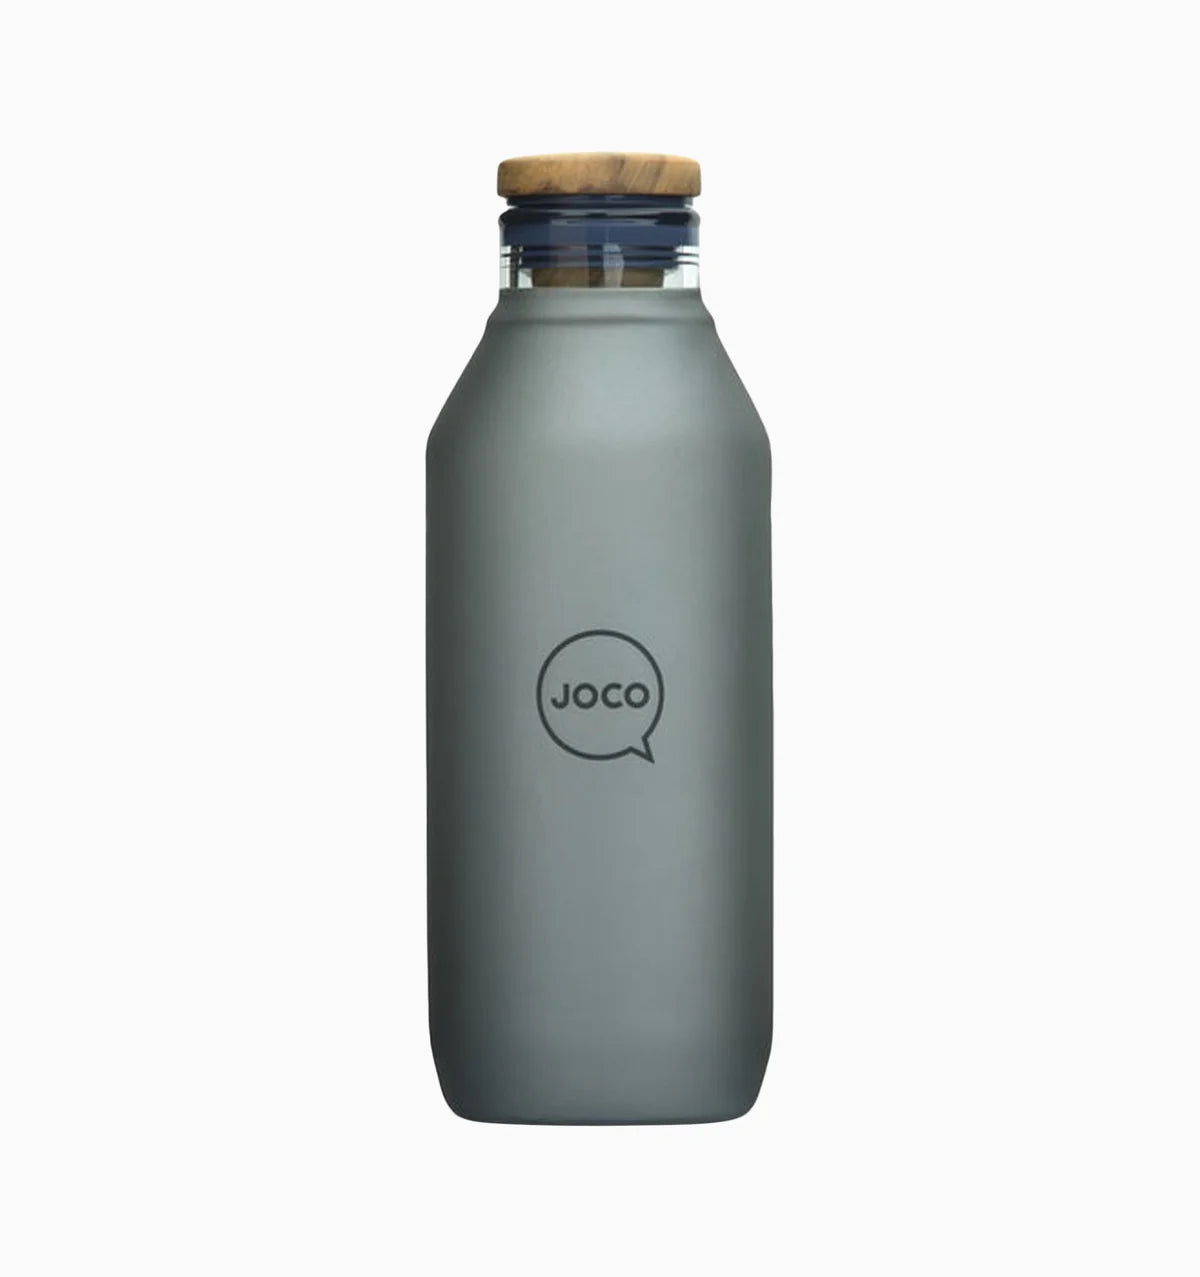 JOCO 600ml glass drink bottle